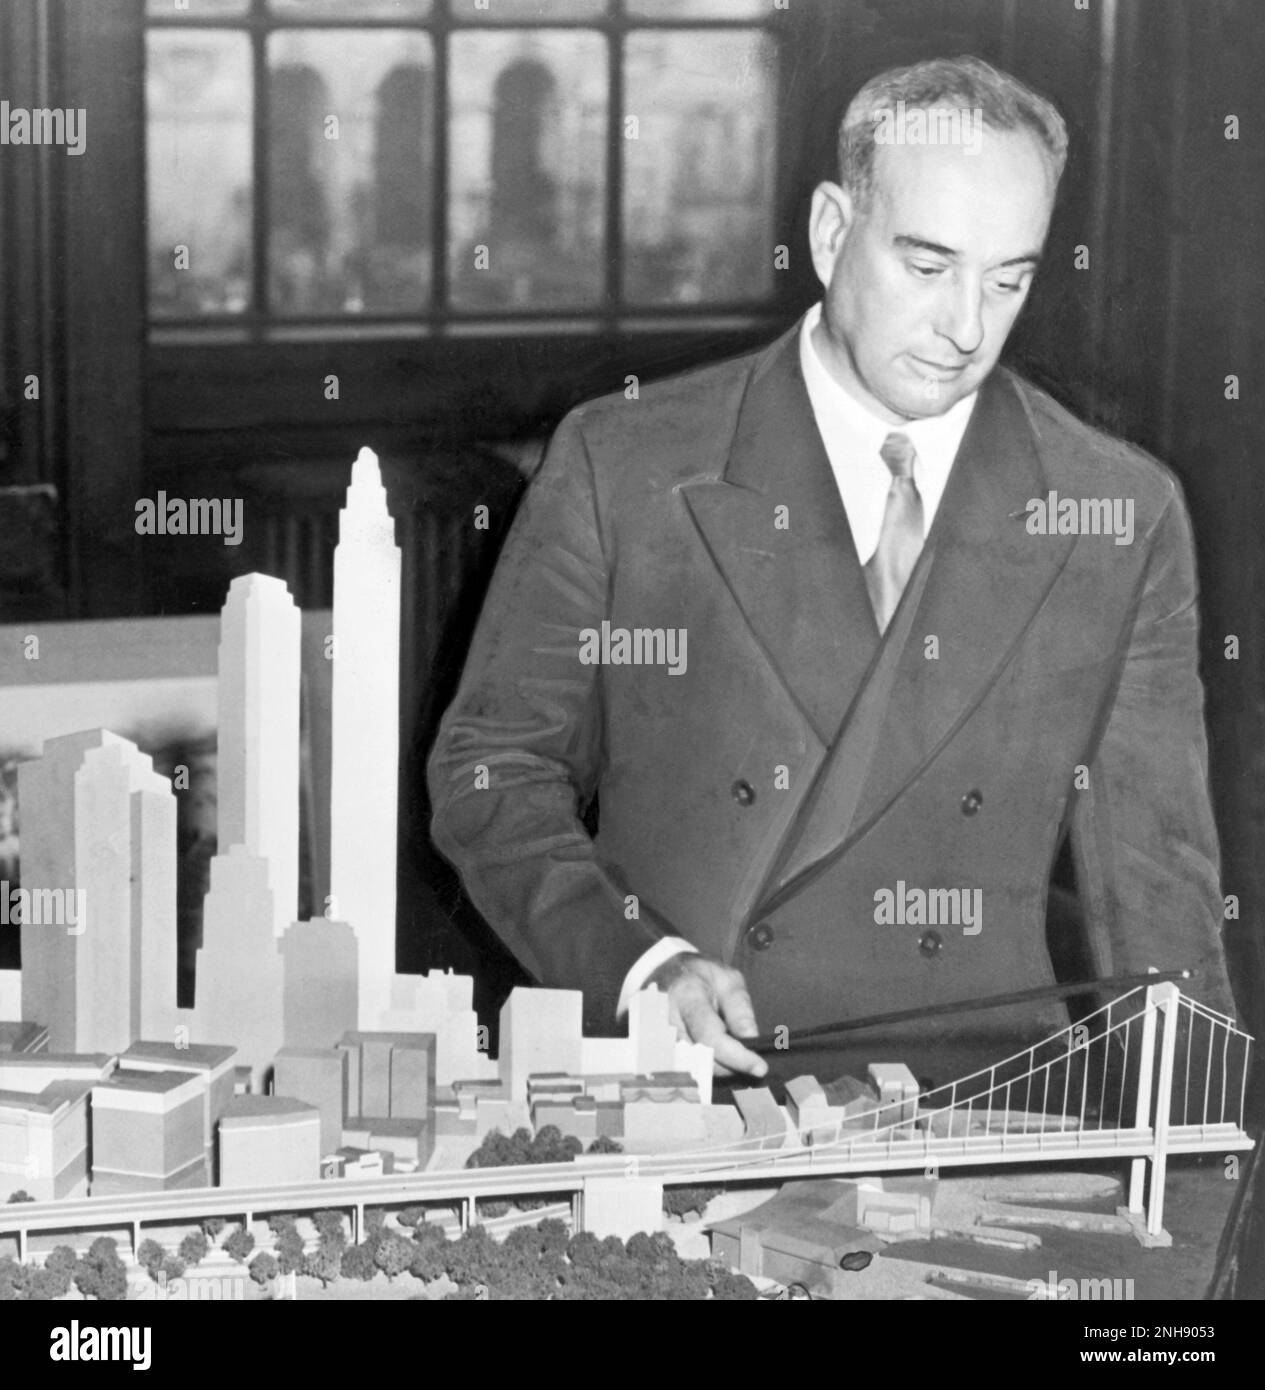 New York City Park Commissioner Robert Moses mit Modell der geplanten Battery Bridge. Robert Moses (1888-1981) war ein einflussreicher amerikanischer Amtsträger, dessen Stadtplanung die Metropolregion New York neu gestaltete. Foto von C.M. Stieglitz, 1939. Stockfoto